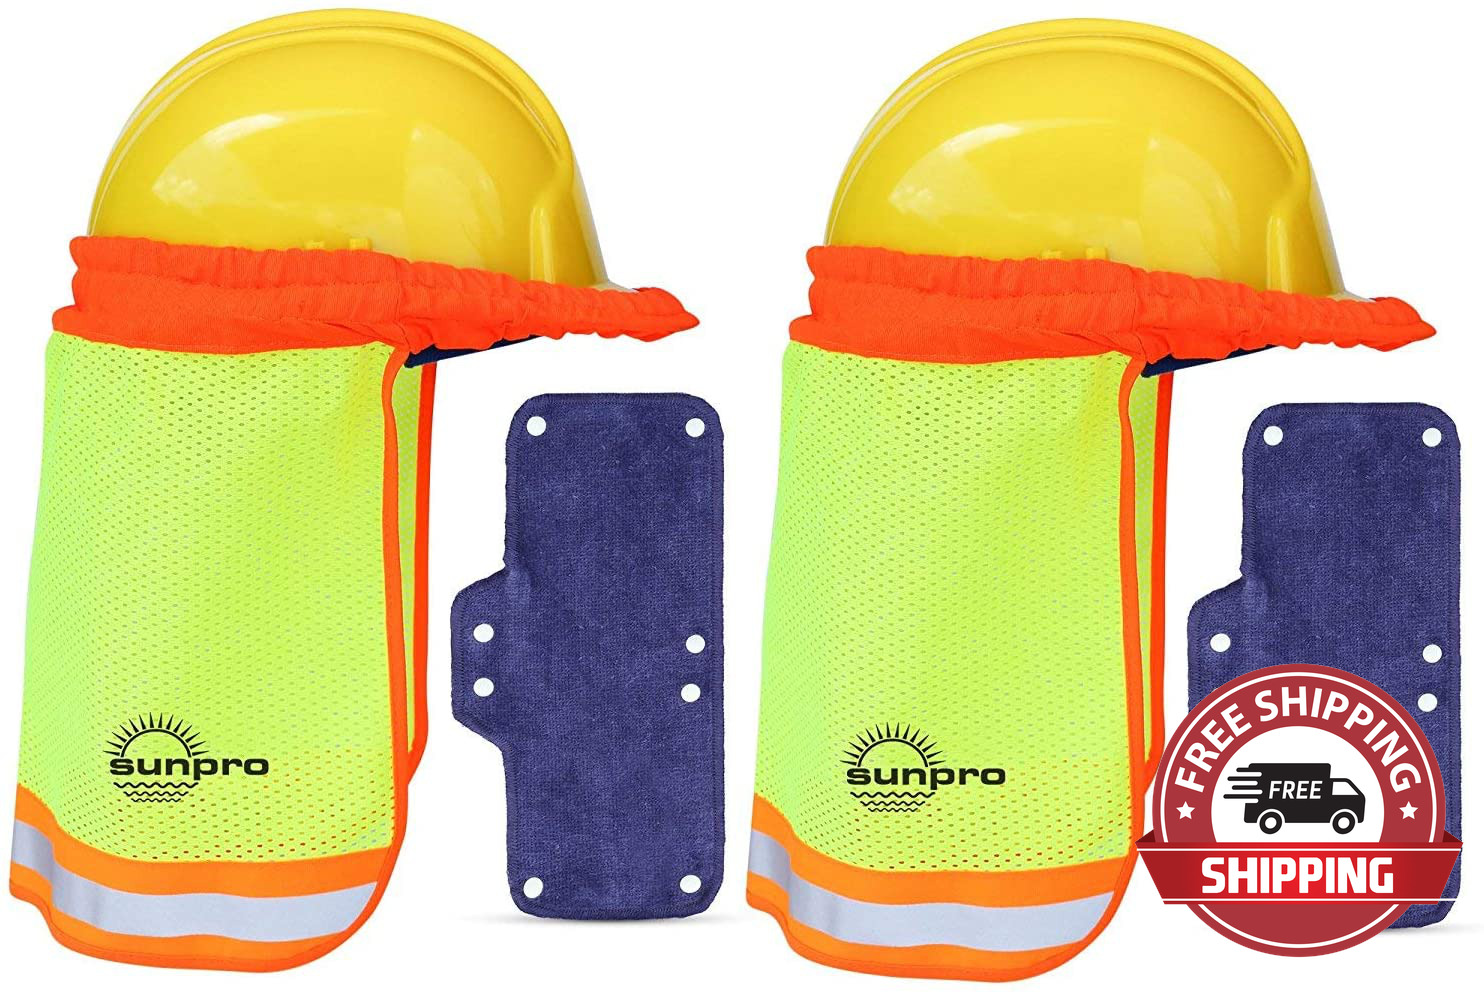 Sunpro Hard Hat Sun Shade - Sweatband Set, Hardhat Neck Protector Shade Fits Reg